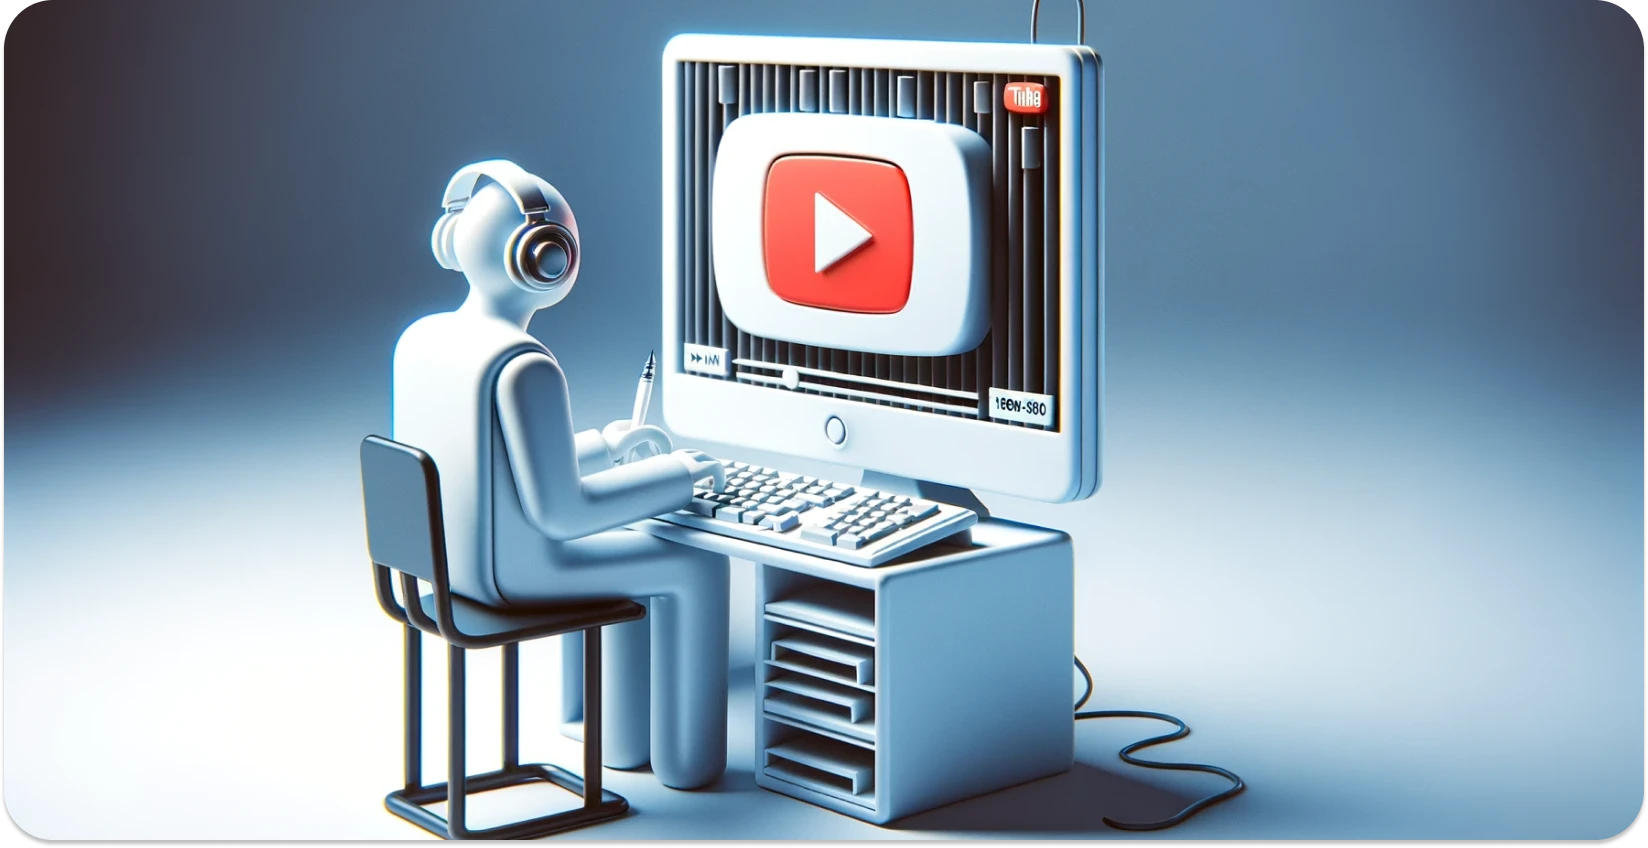 Stilizovana ilustracija osobe koja koristi računar sa interfejsom YouTube, fokusirajući se na transkripciju.